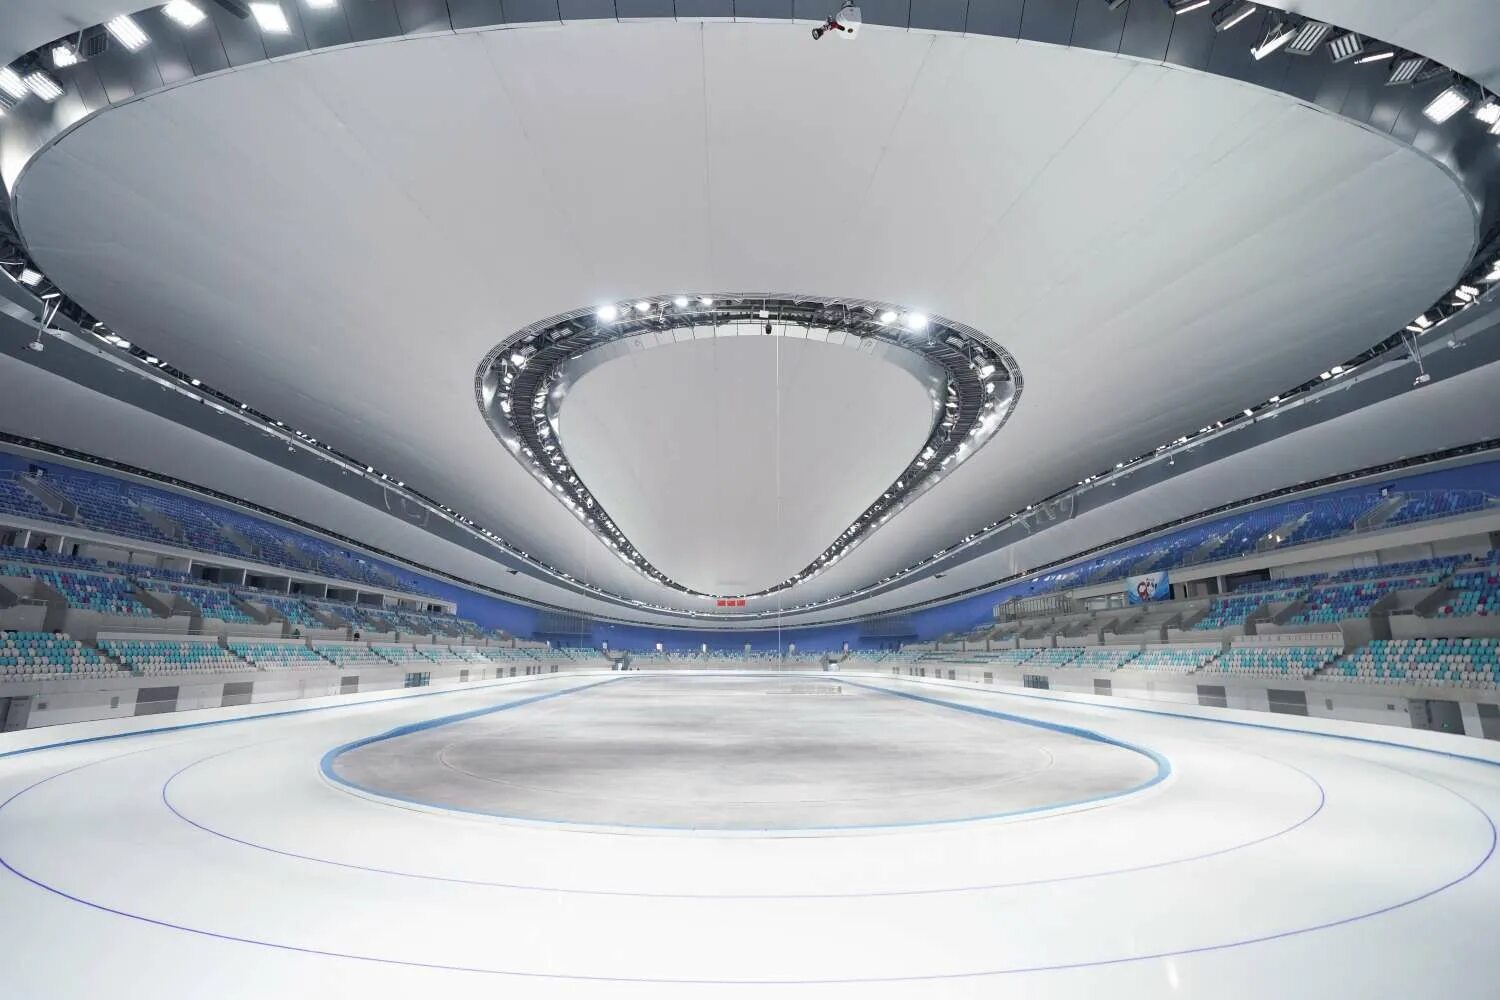 Конькобежный стадион. Национальный конькобежный стадион Пекин. Национальный конькобежный стадион Пекин 2022. Бейжин 2022. Олимпийские объекты в Пекине 2022.